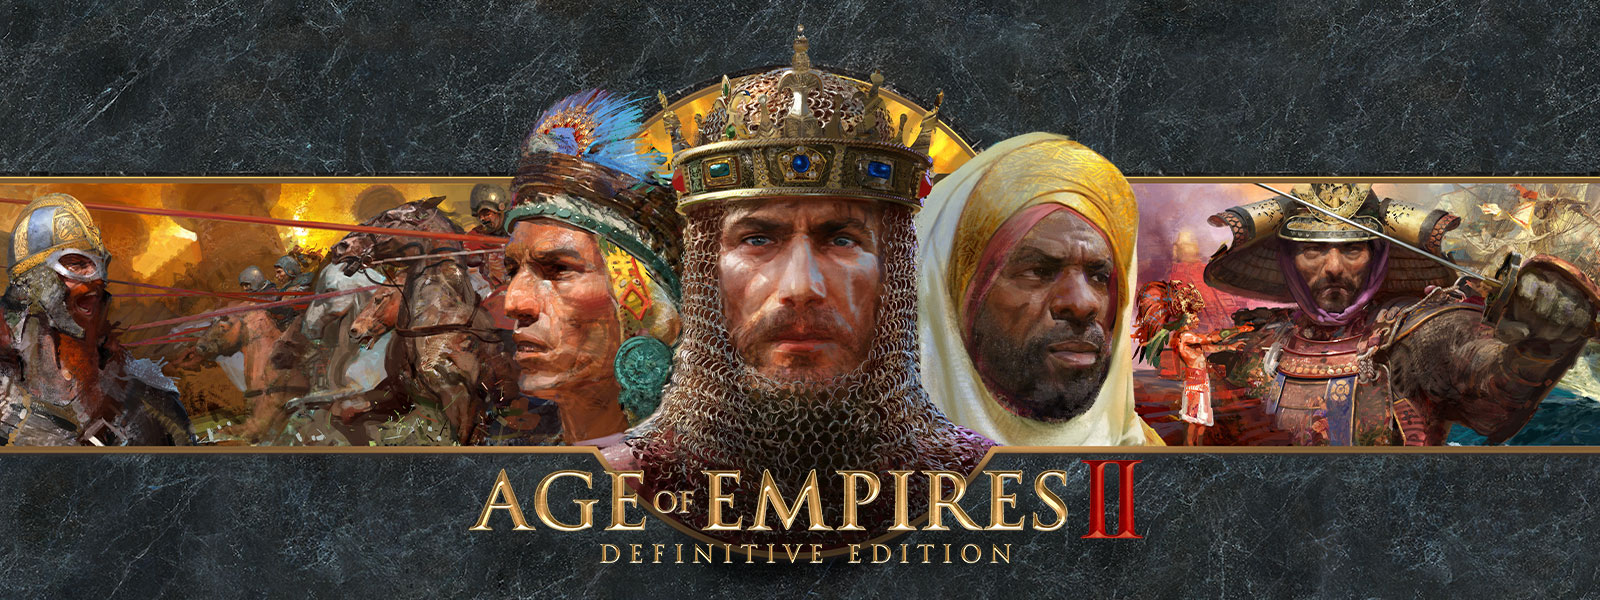 Age of Empires II: Definitive Edition — logo na szarym tle przedstawiające dowódców wojennych i ich armie